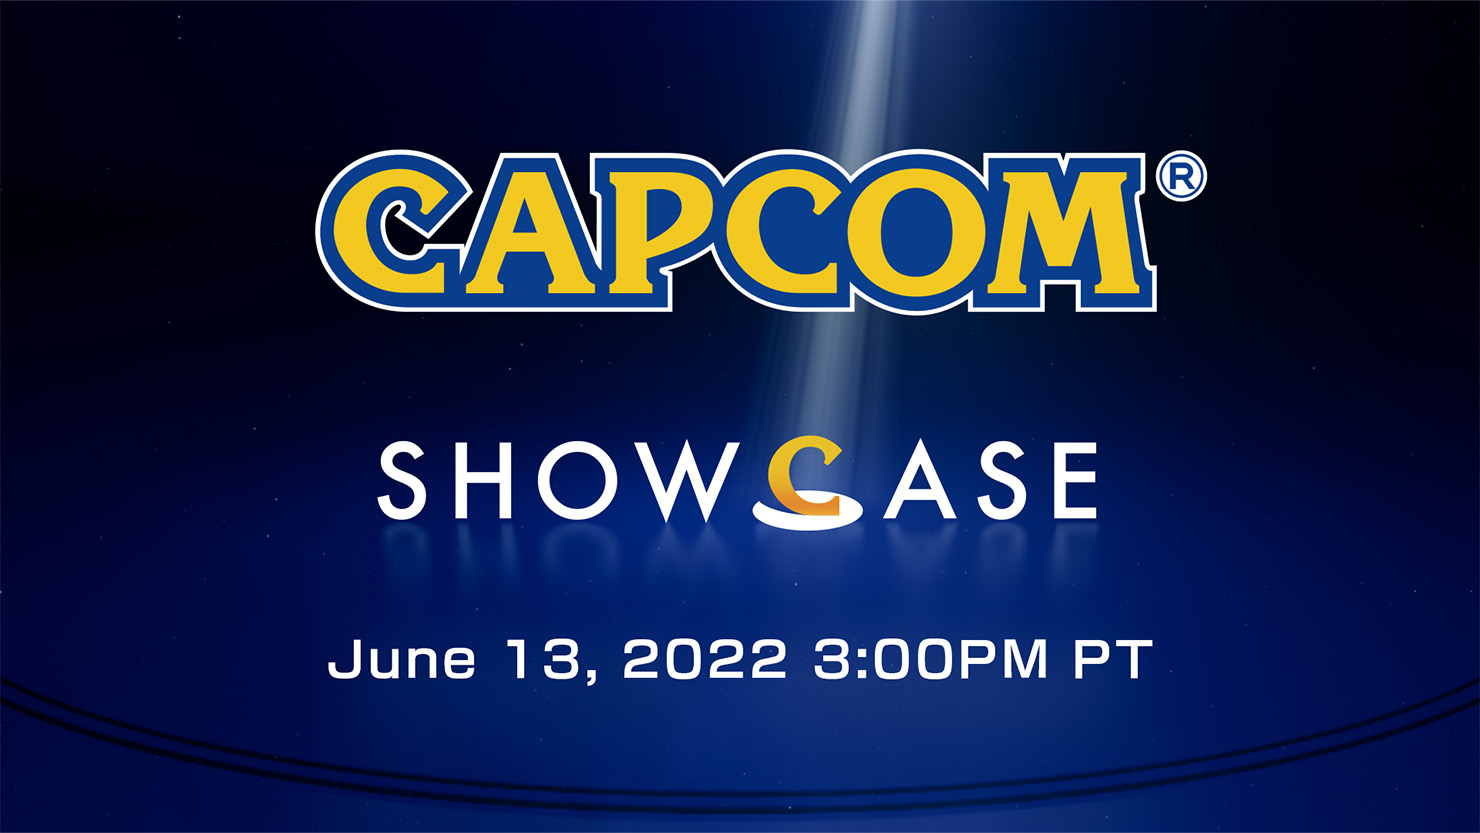 Capcom Showcase 2022